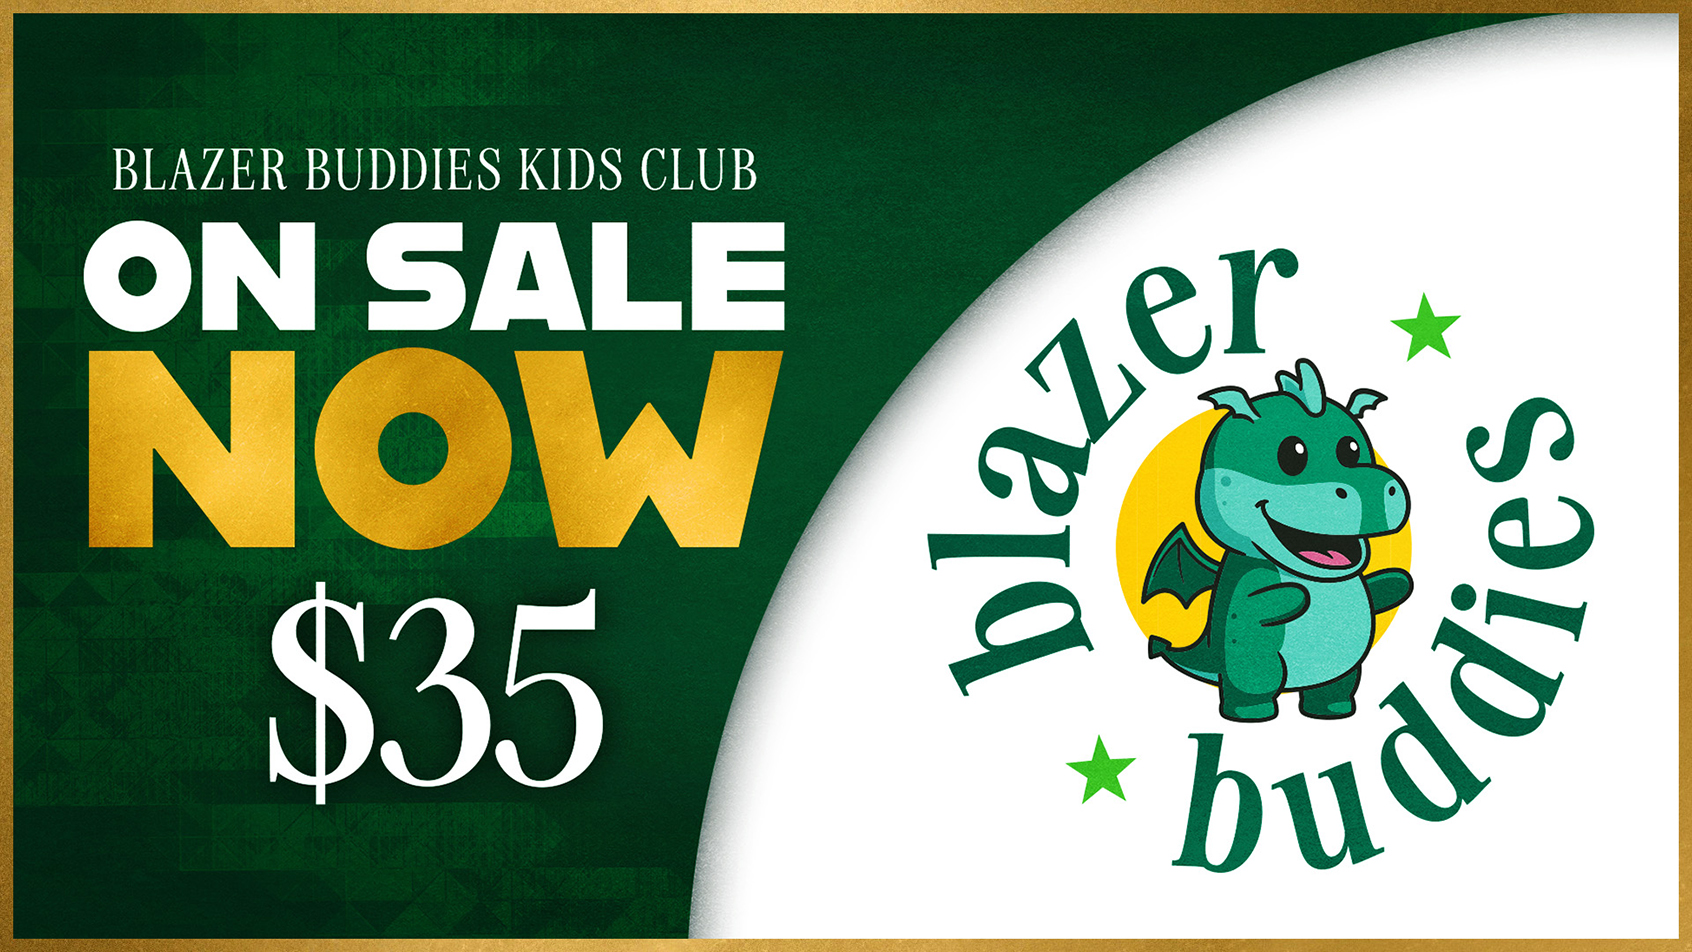 Blazer Buddies Kids Club on sale now: $35